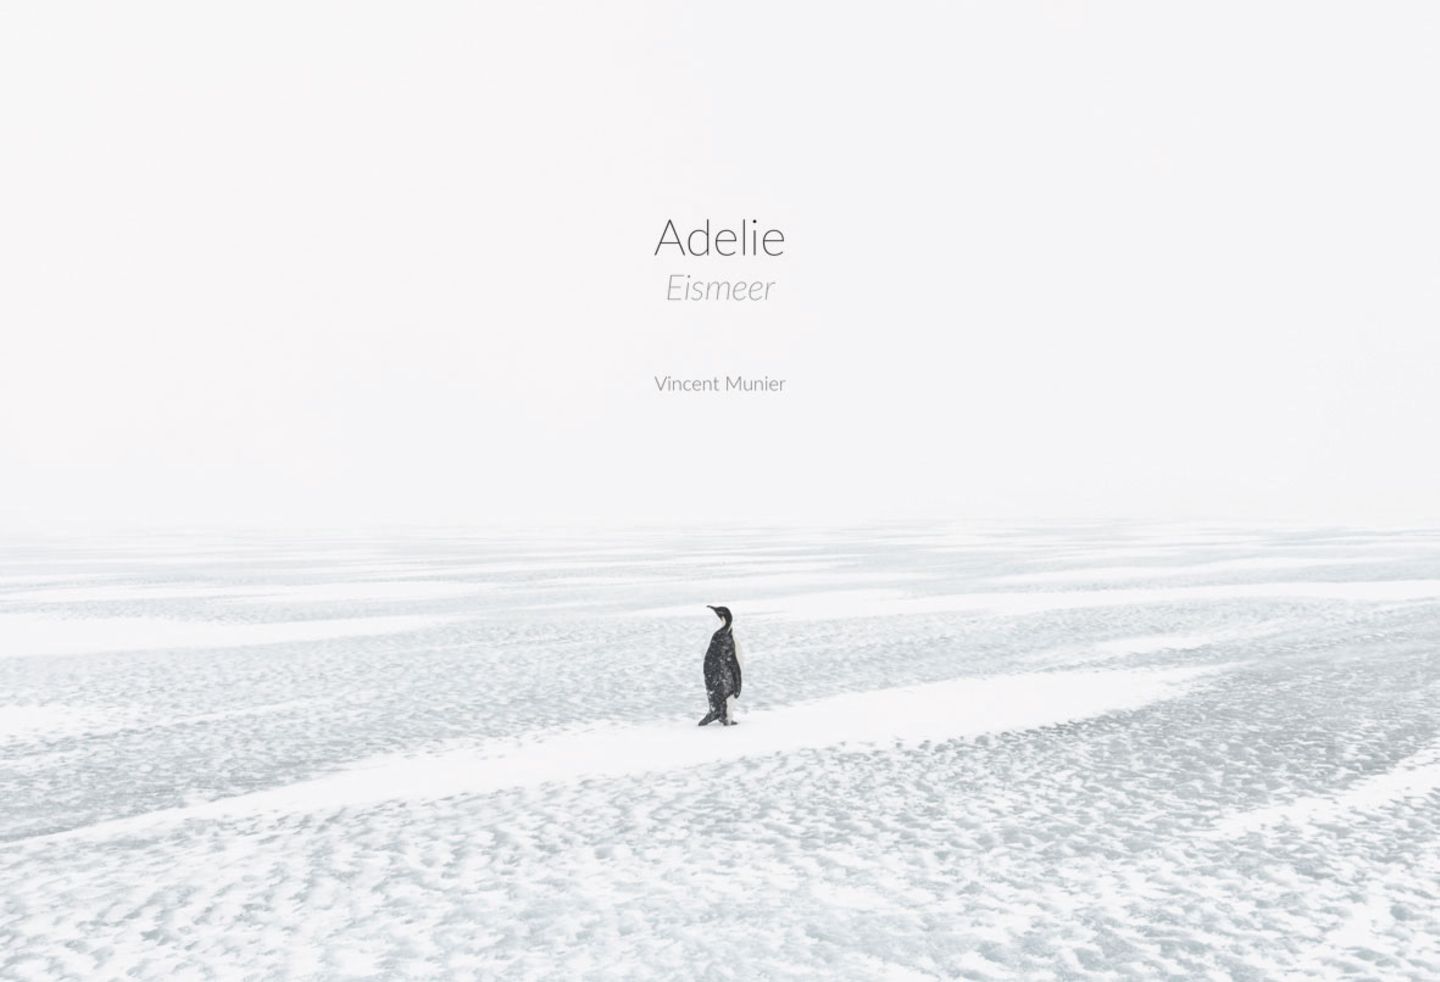 Adelie I Eismeer – Eisland